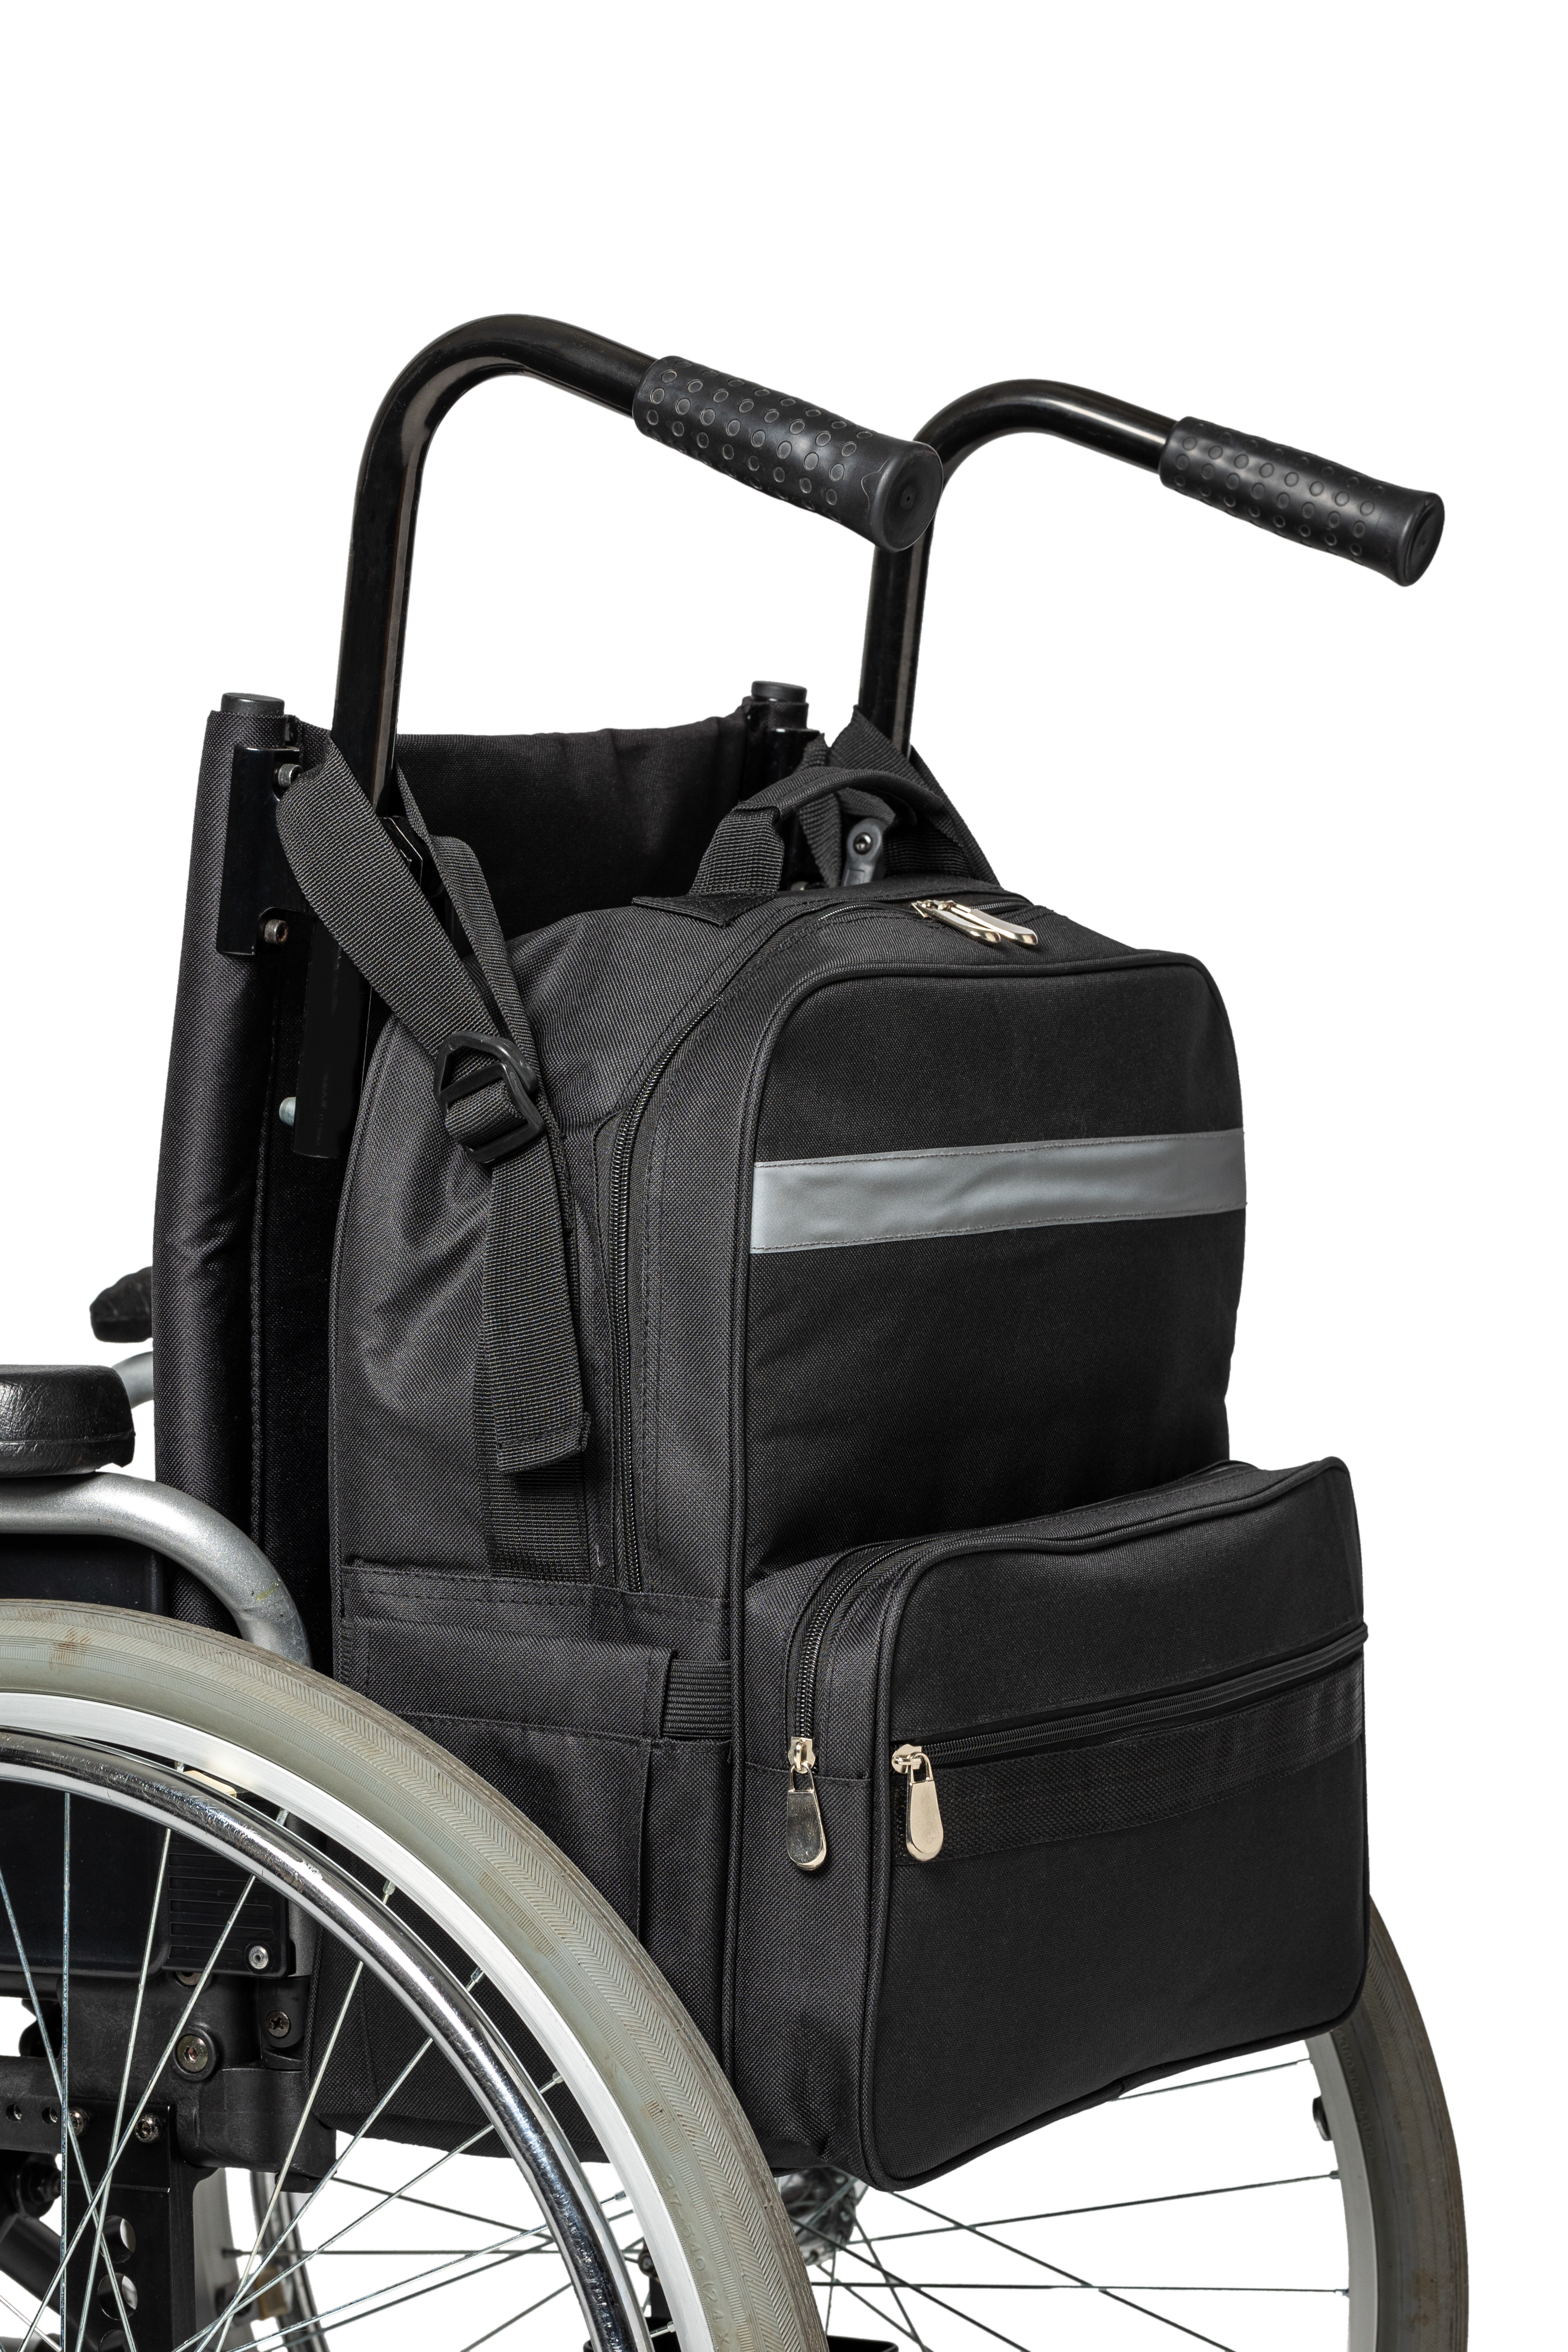 Rollstuhl-Rucksack-Tasche, Rollstuhl- und Rollator-Zubehör  Aufbewahrungstaschen – Leichter reflektierender Rucksack für Mobilität,  Transport und Reise, tragbare Geräte – passend für Roller, Elektrorol :  : Drogerie & Körperpflege